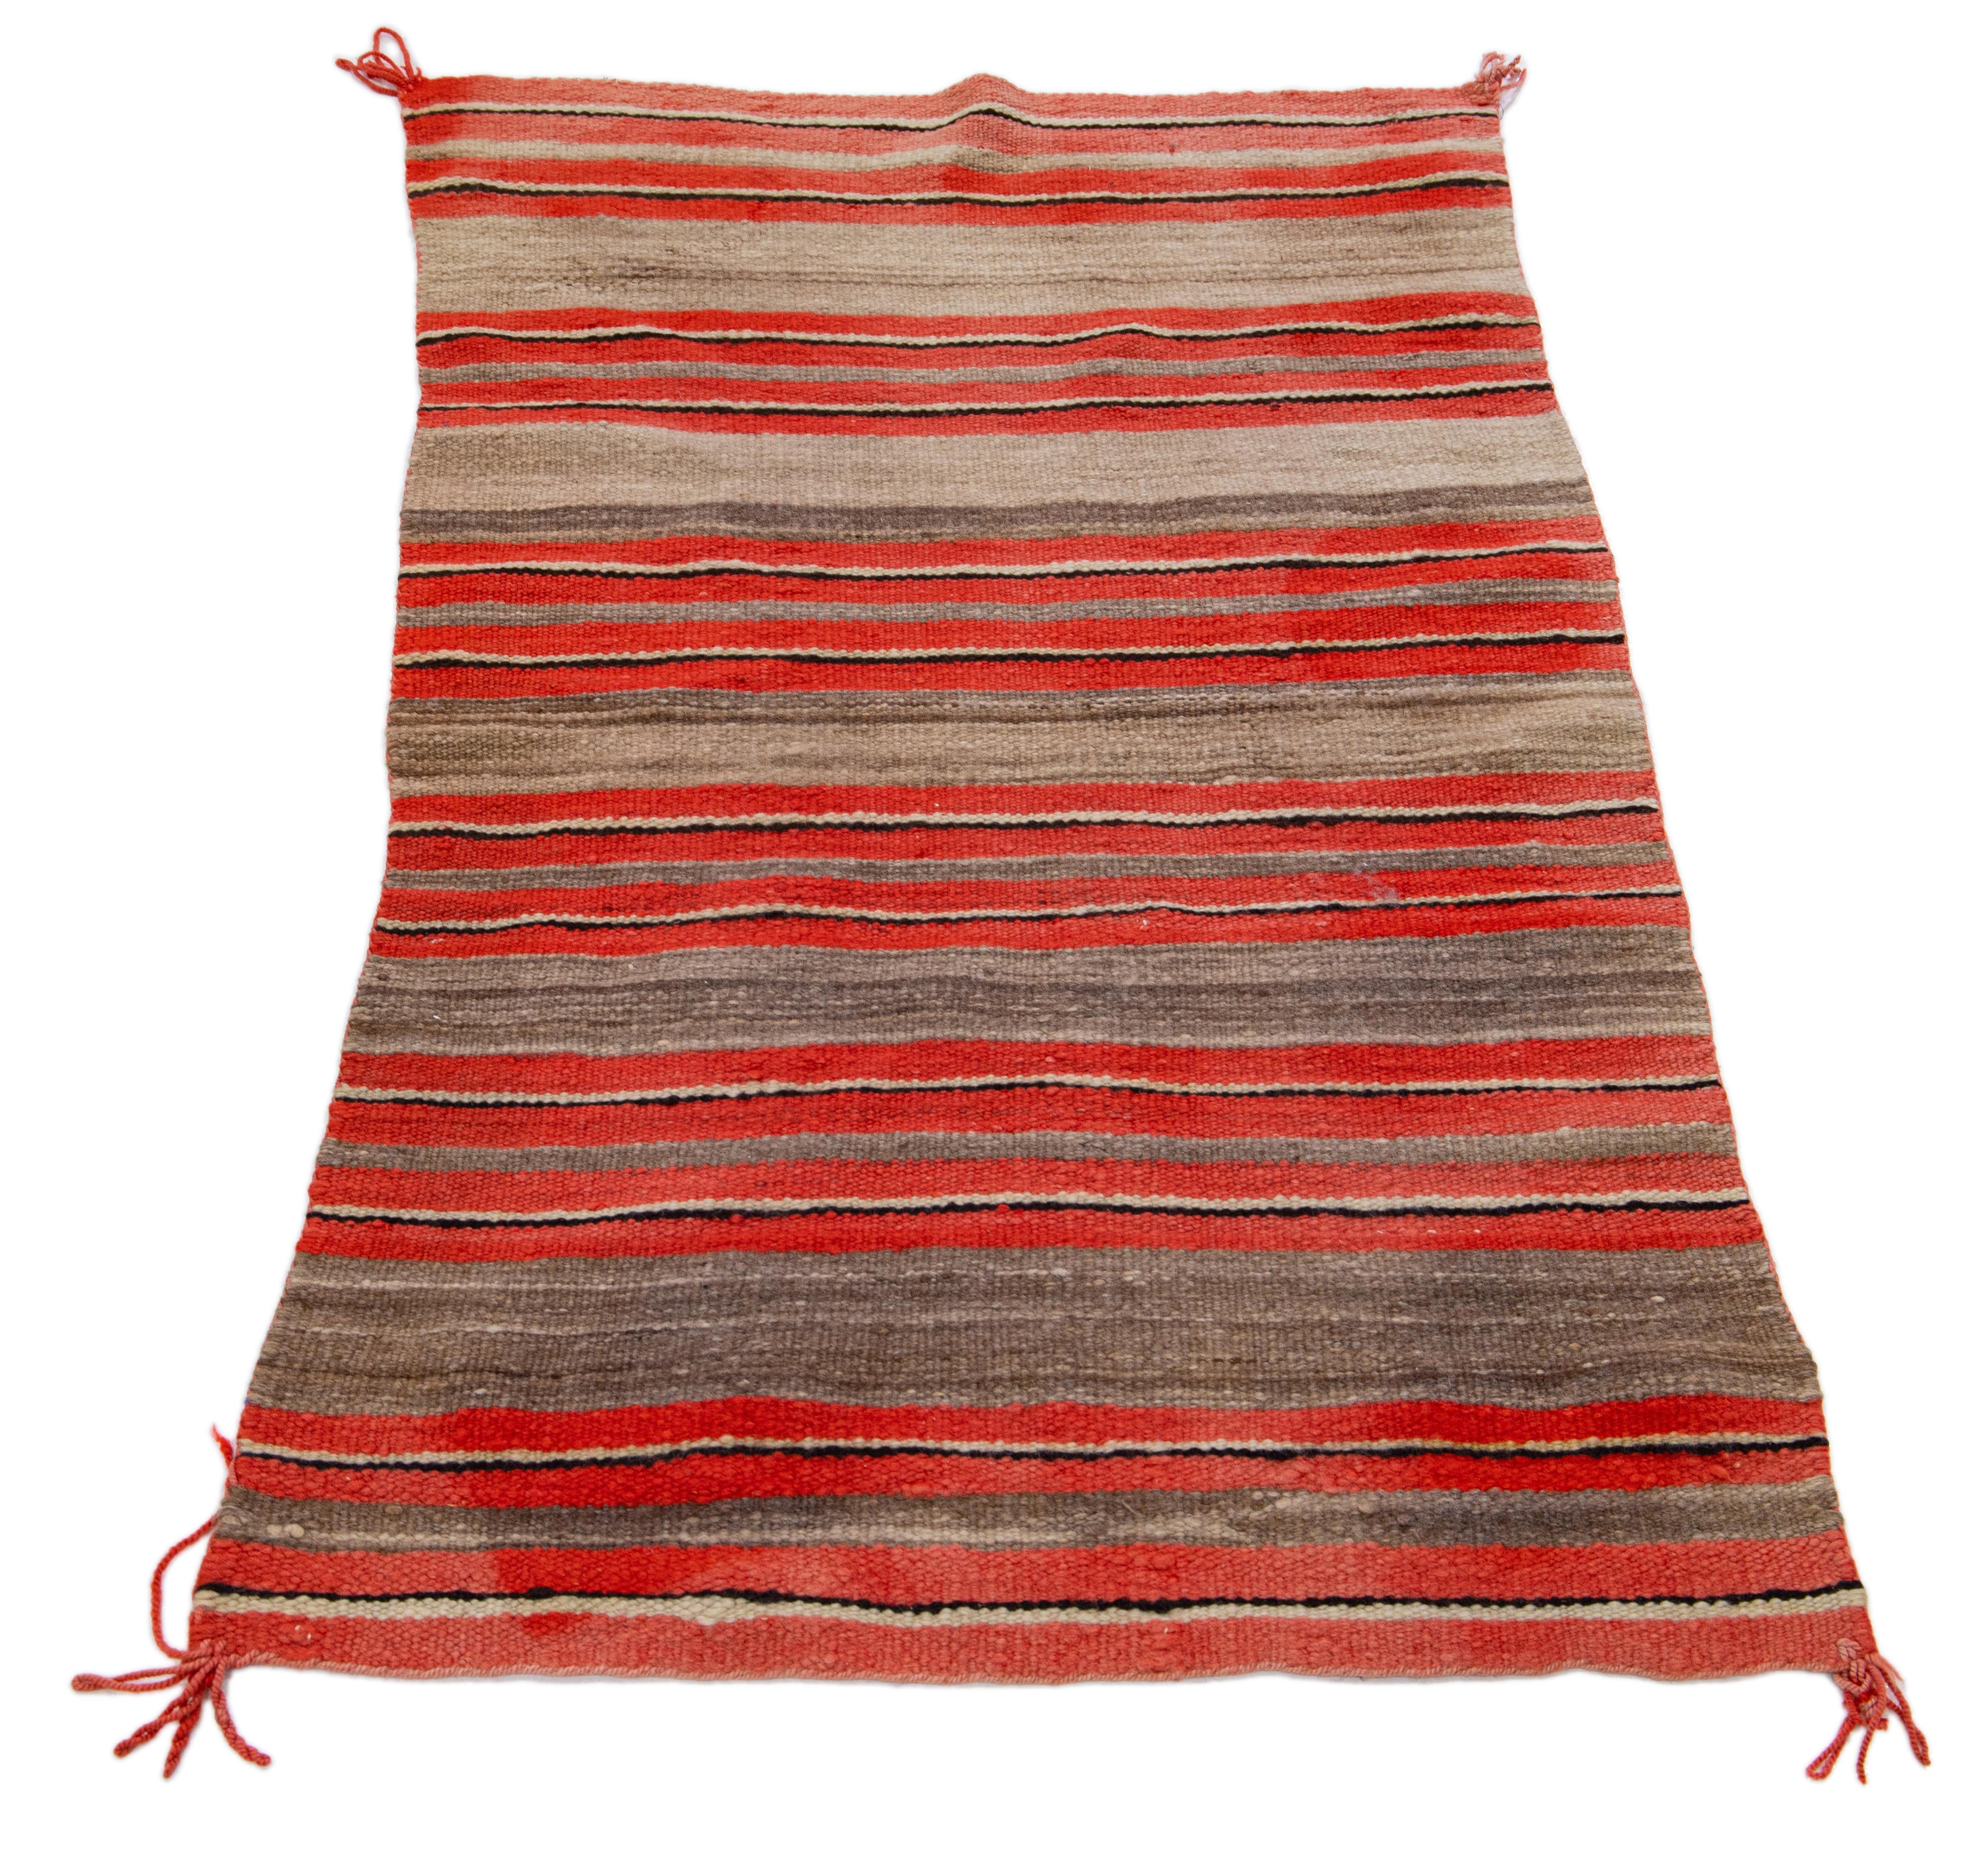 North American Vintage Navajo Native American Indian Striped Weaving Rug Blanket